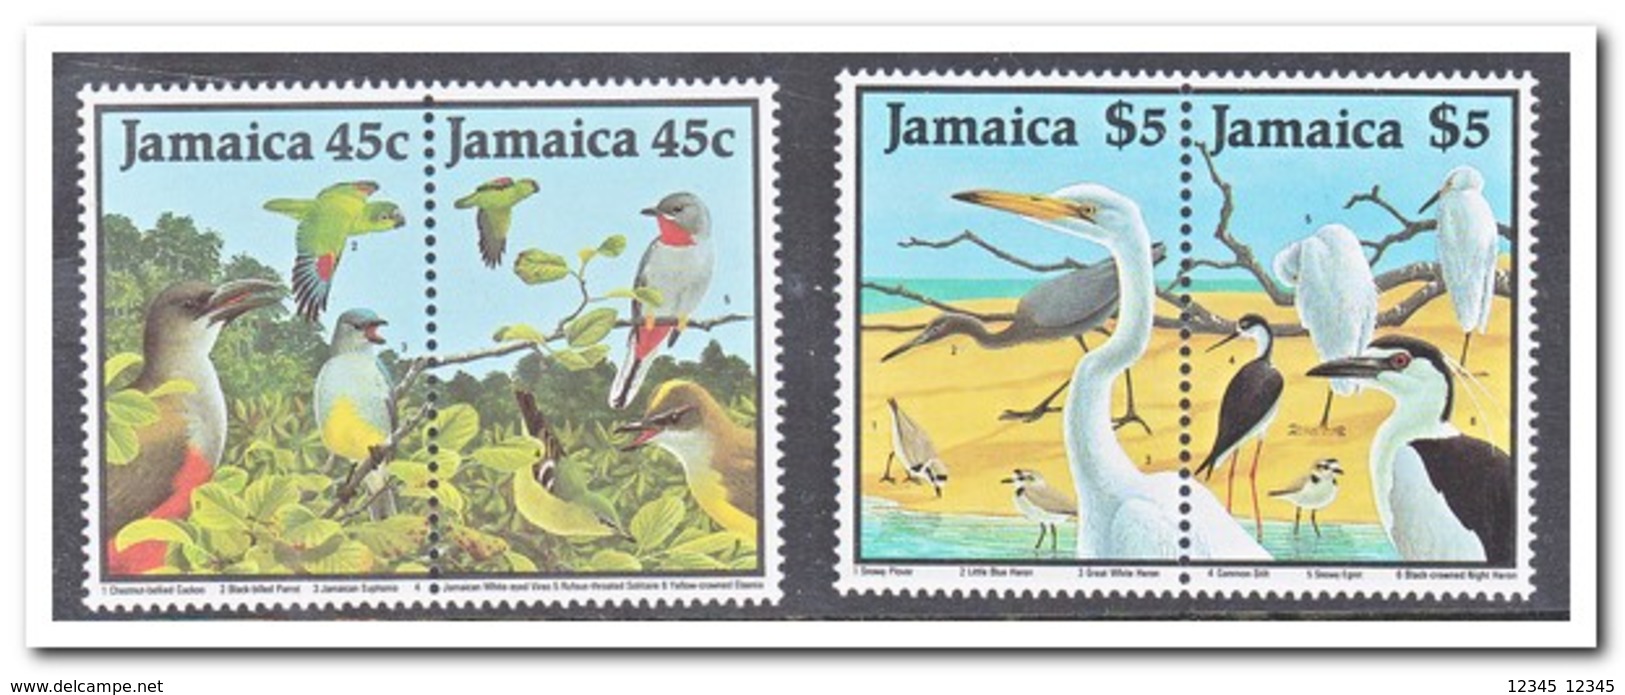 Jamaica 1988, Postfris MNH, Birds - Jamaica (1962-...)